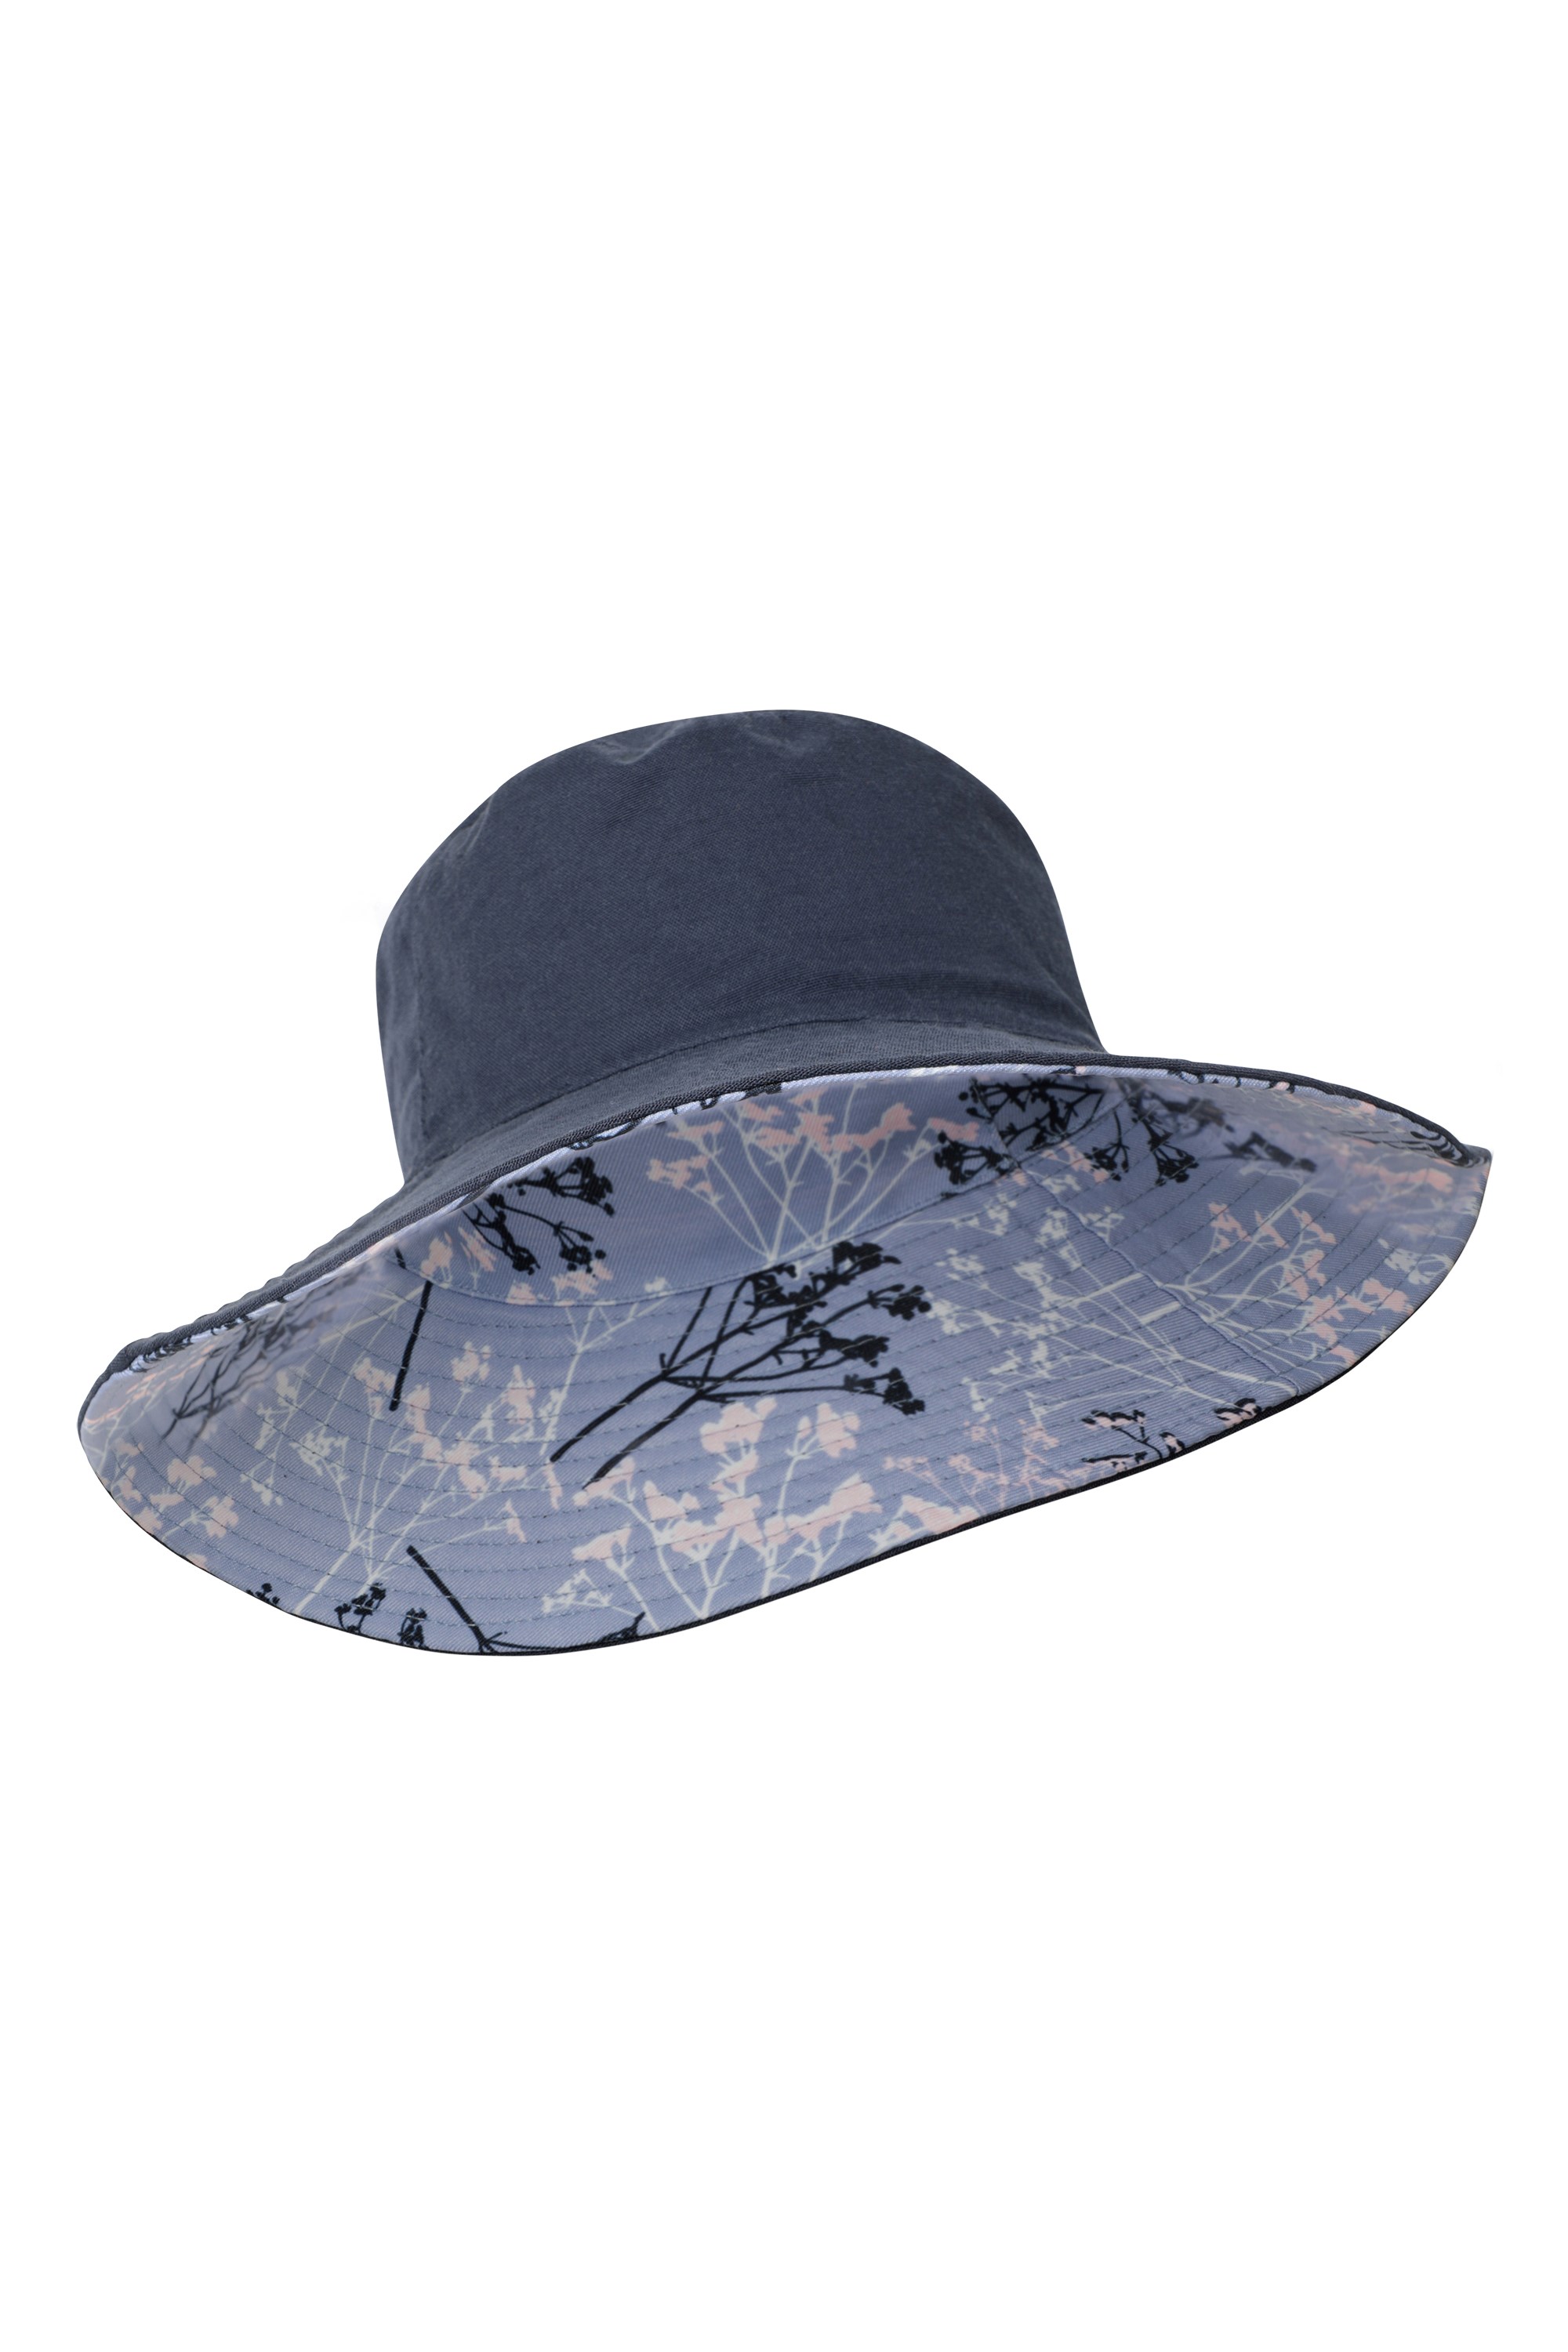 Reversible Womens Printed Sun Hat